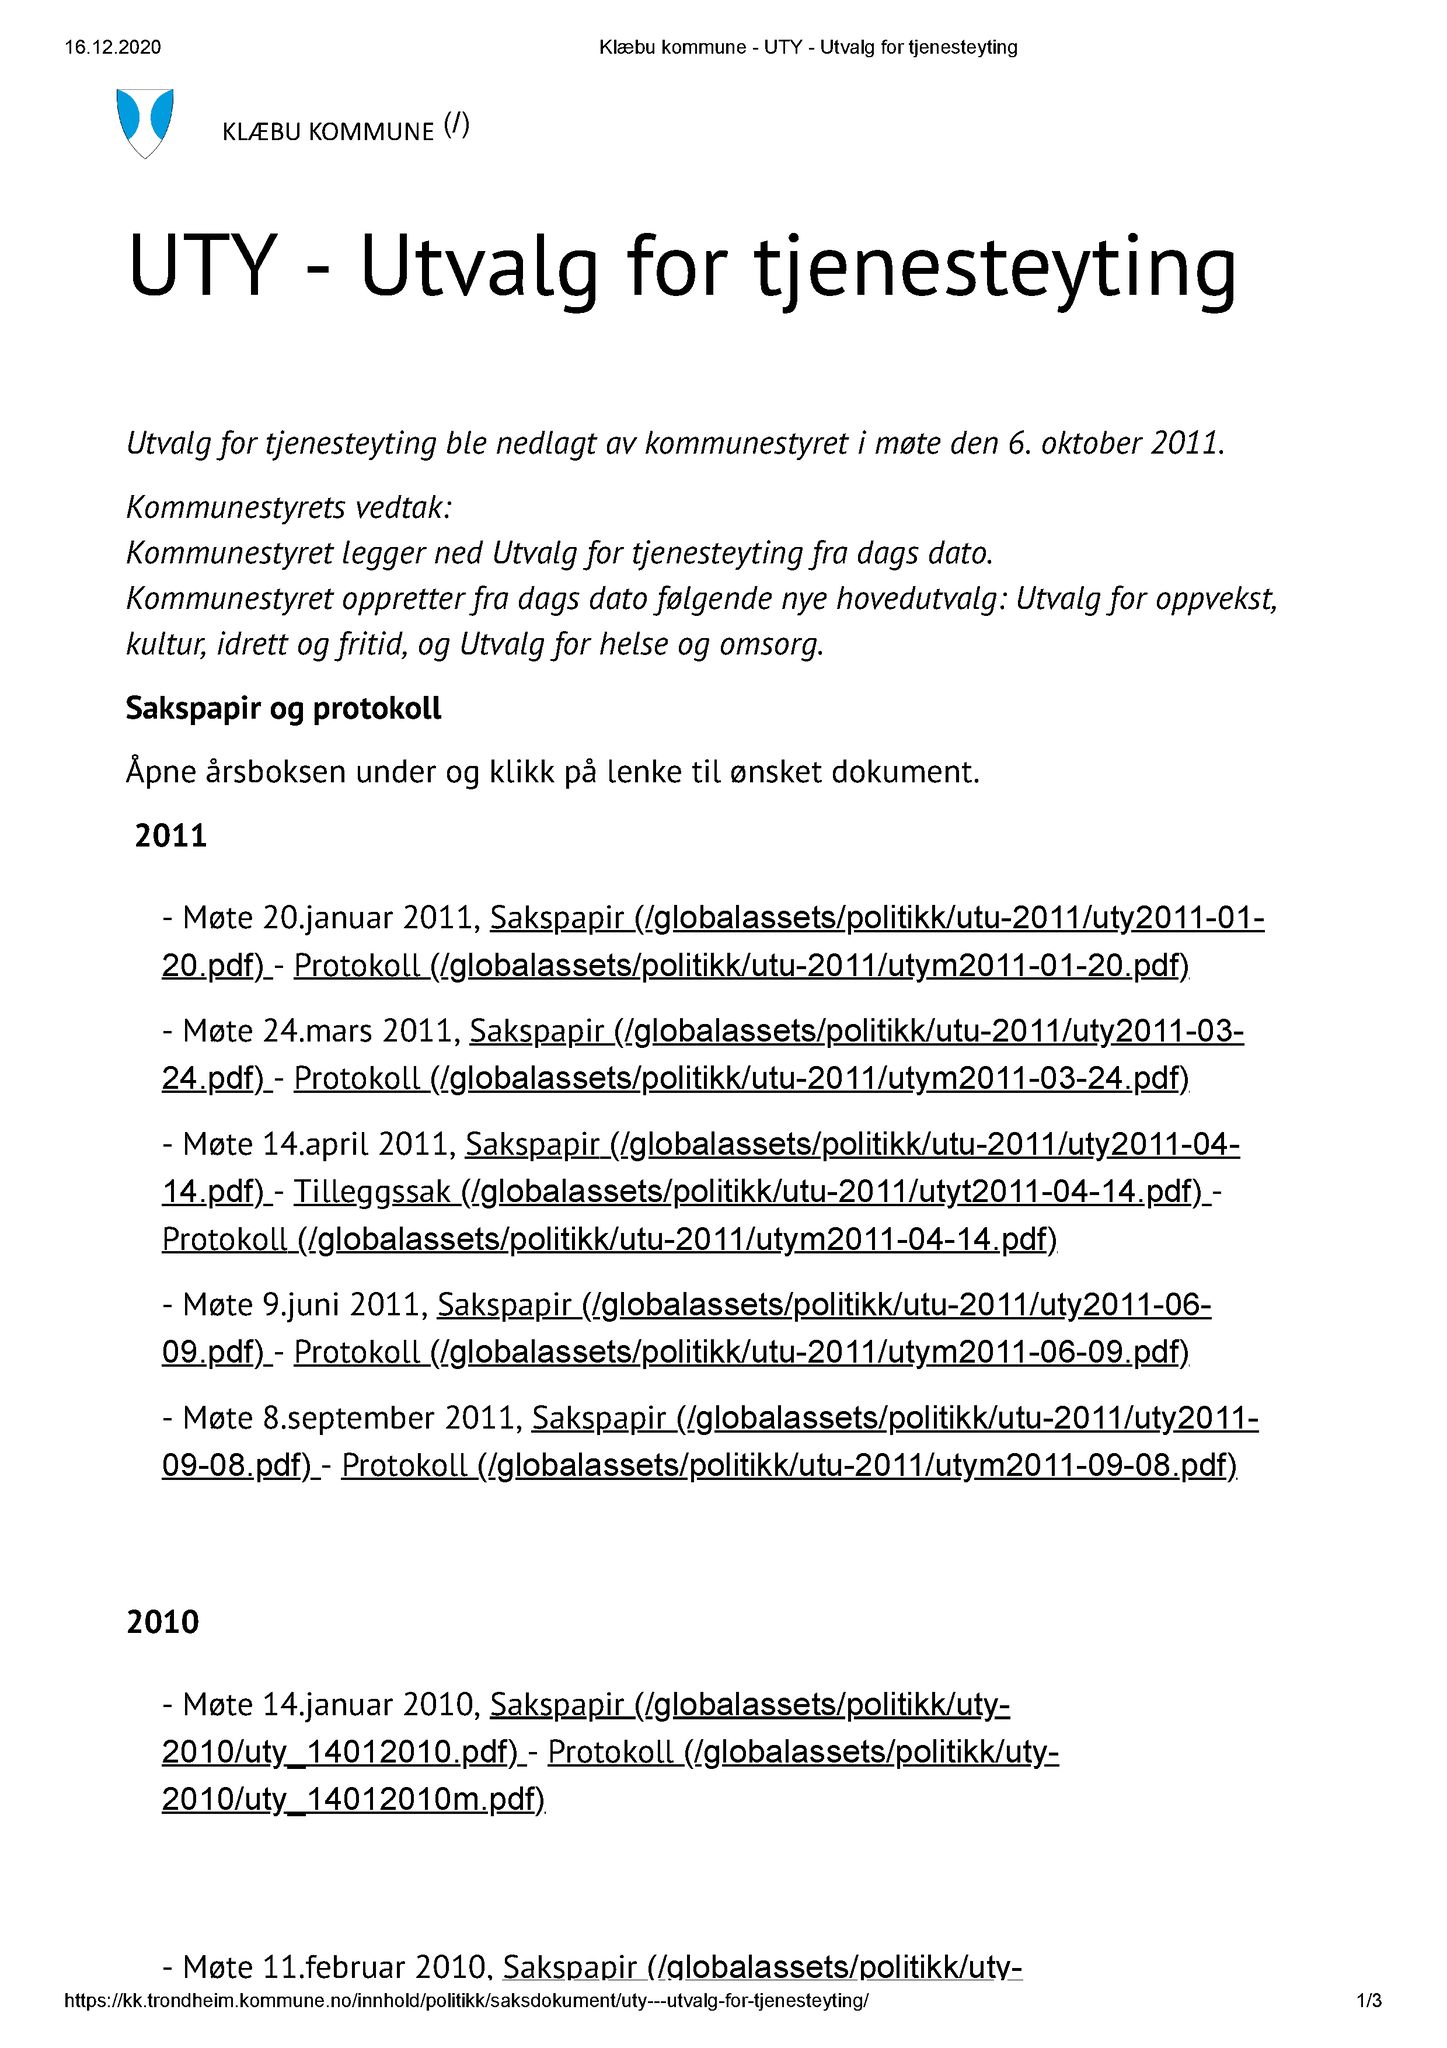 Klæbu Kommune, TRKO/KK/14-UTY/L001: Utvalg for tjenesteyting - Dokumentoversikt, 2009-2011